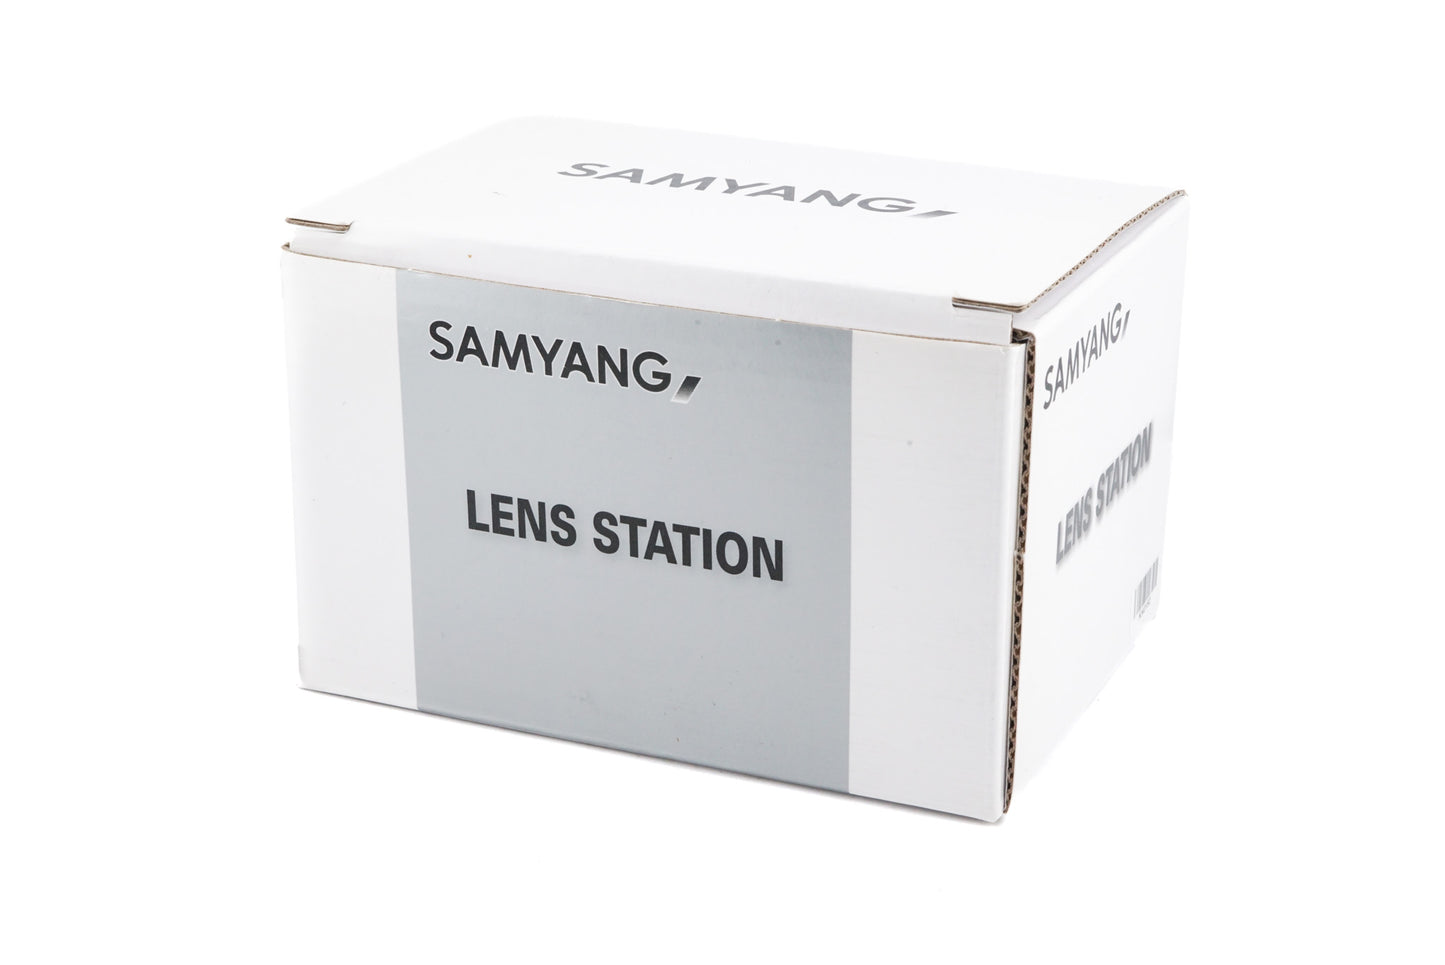 Samyang Lens Station